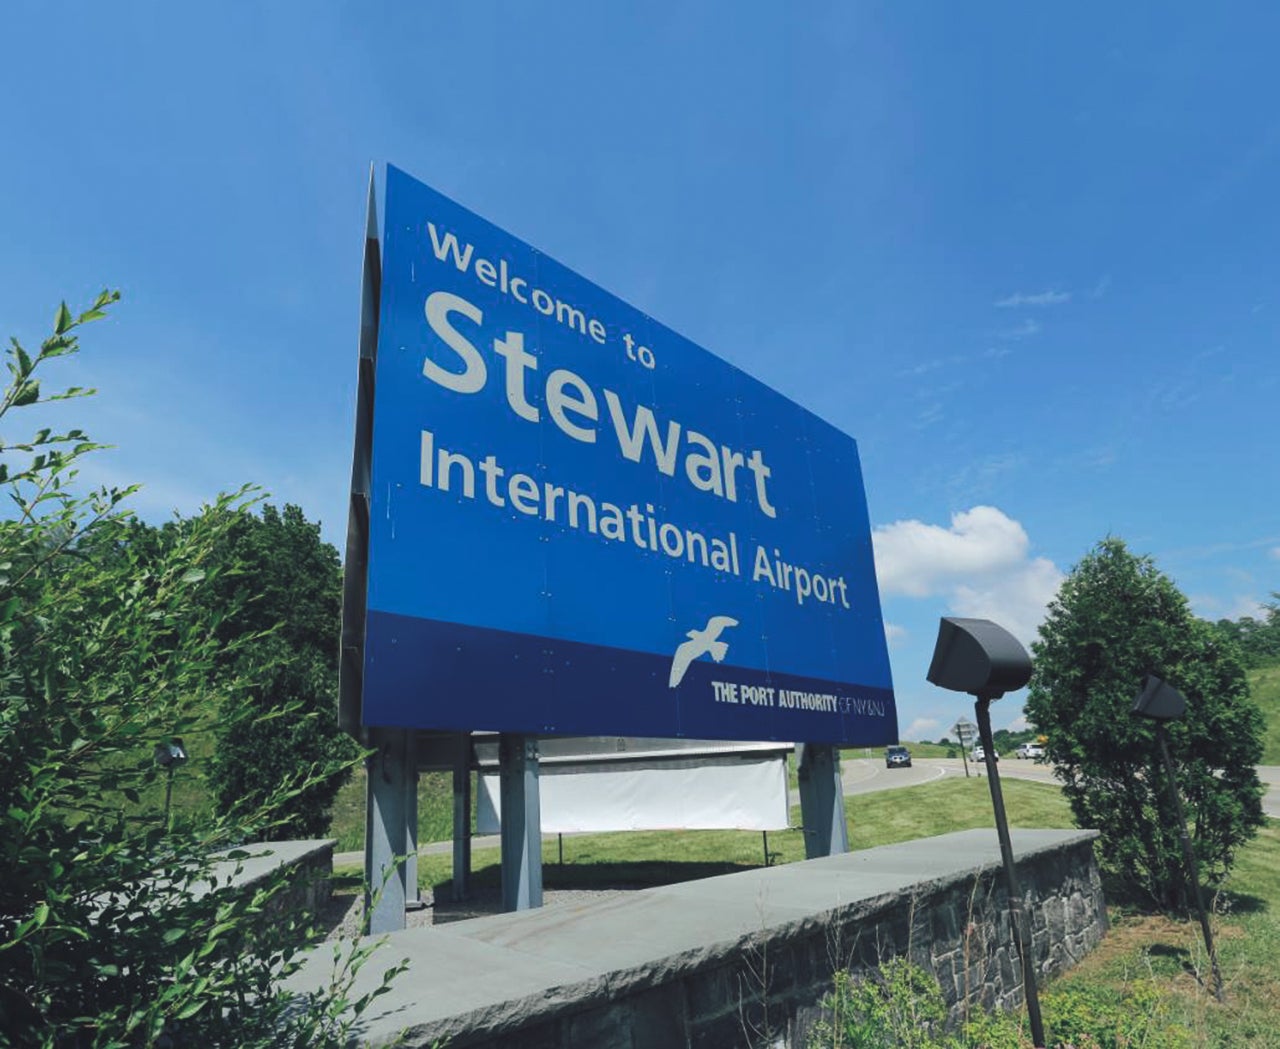 stewart international airport location